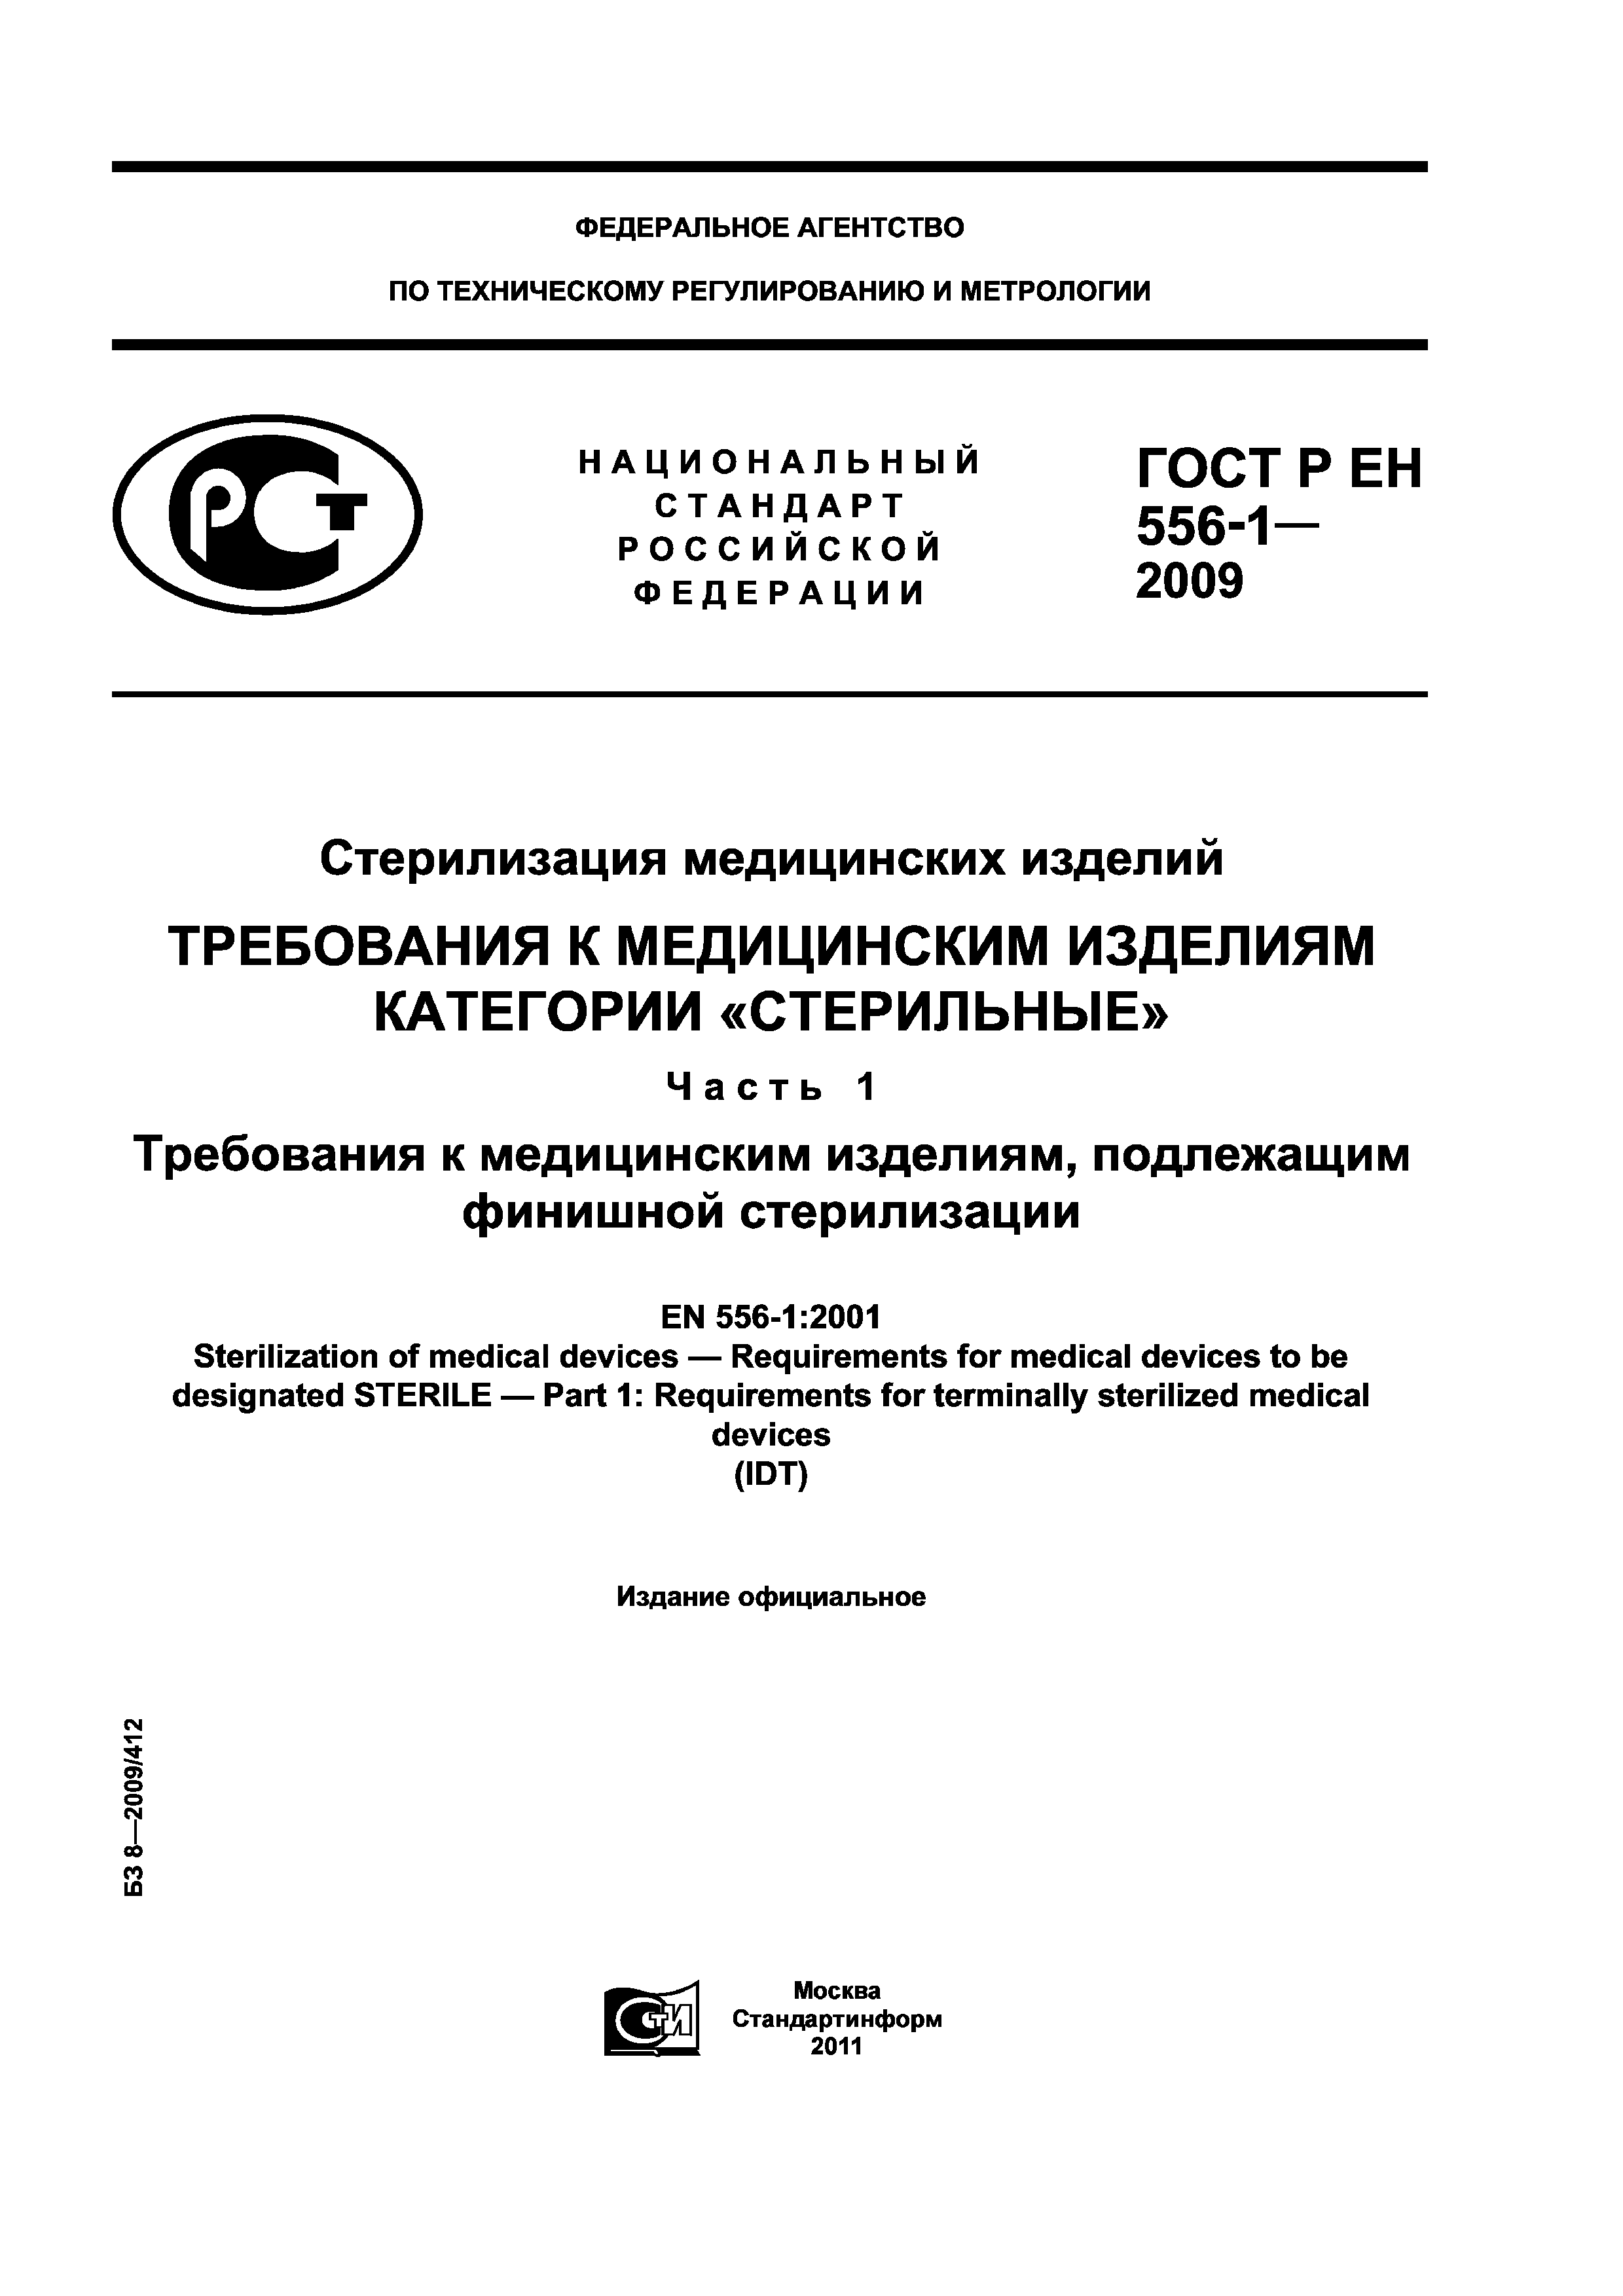 ГОСТ Р ЕН 556-1-2009